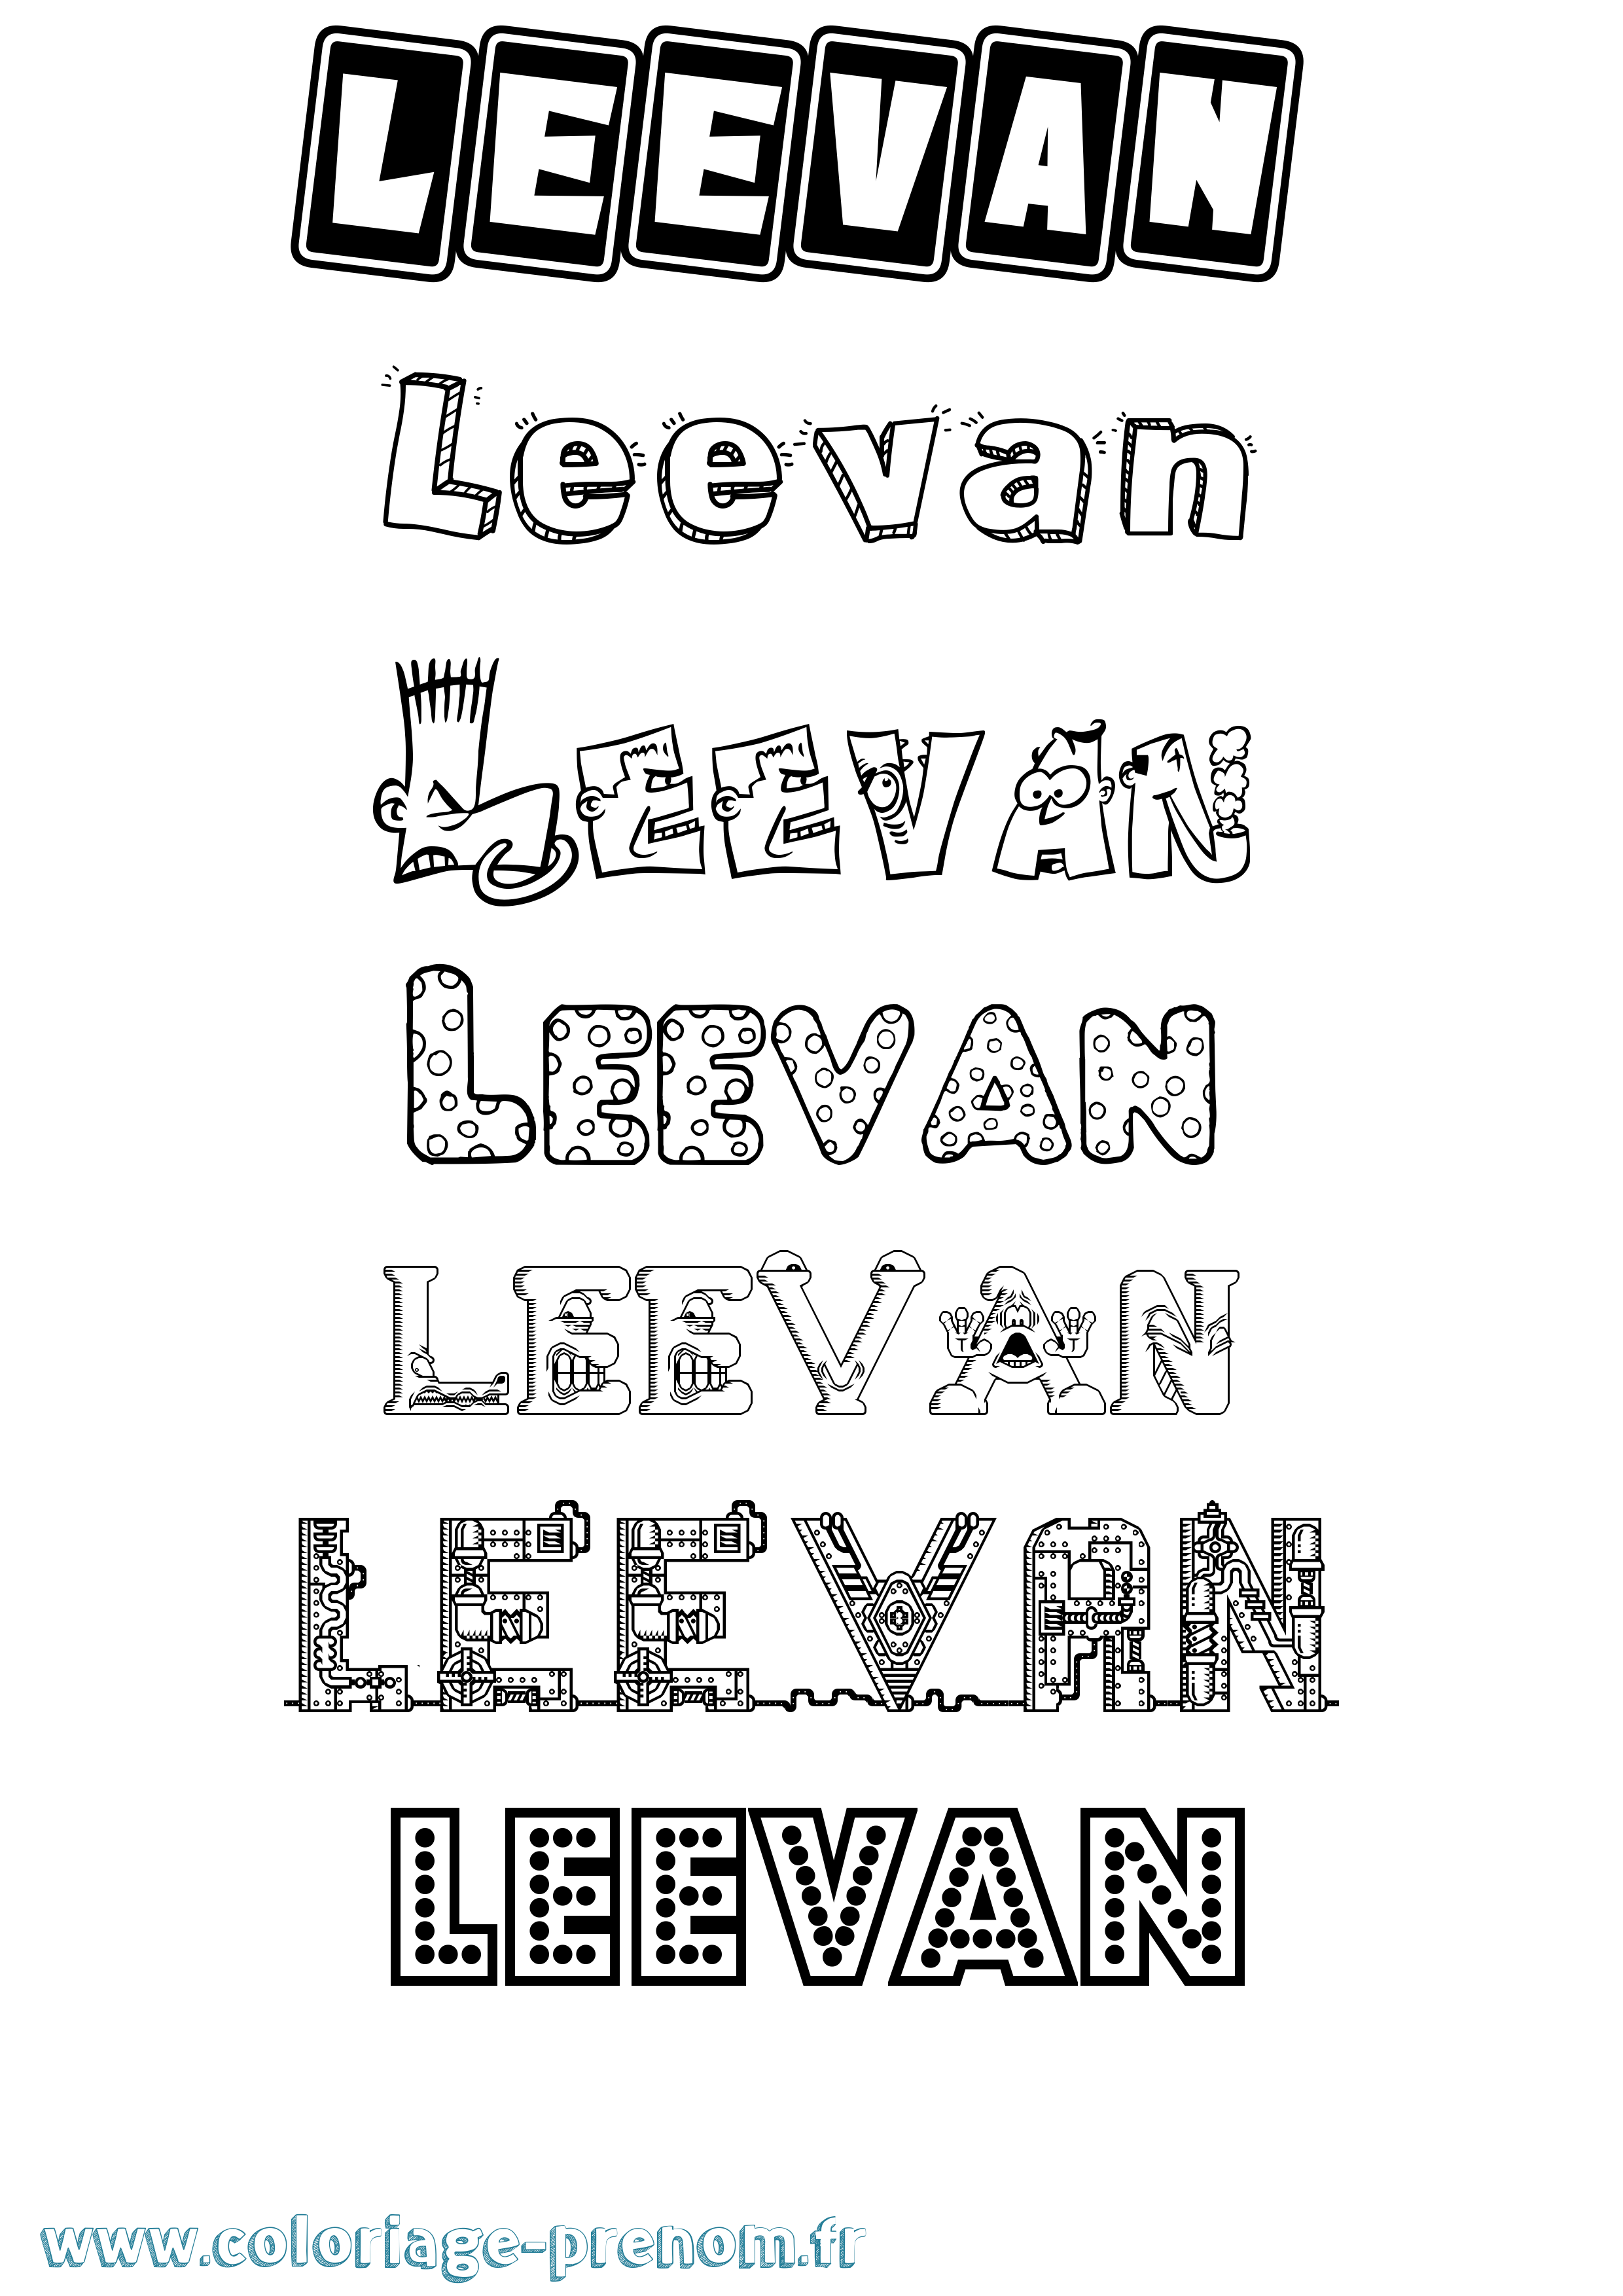 Coloriage prénom Leevan Fun